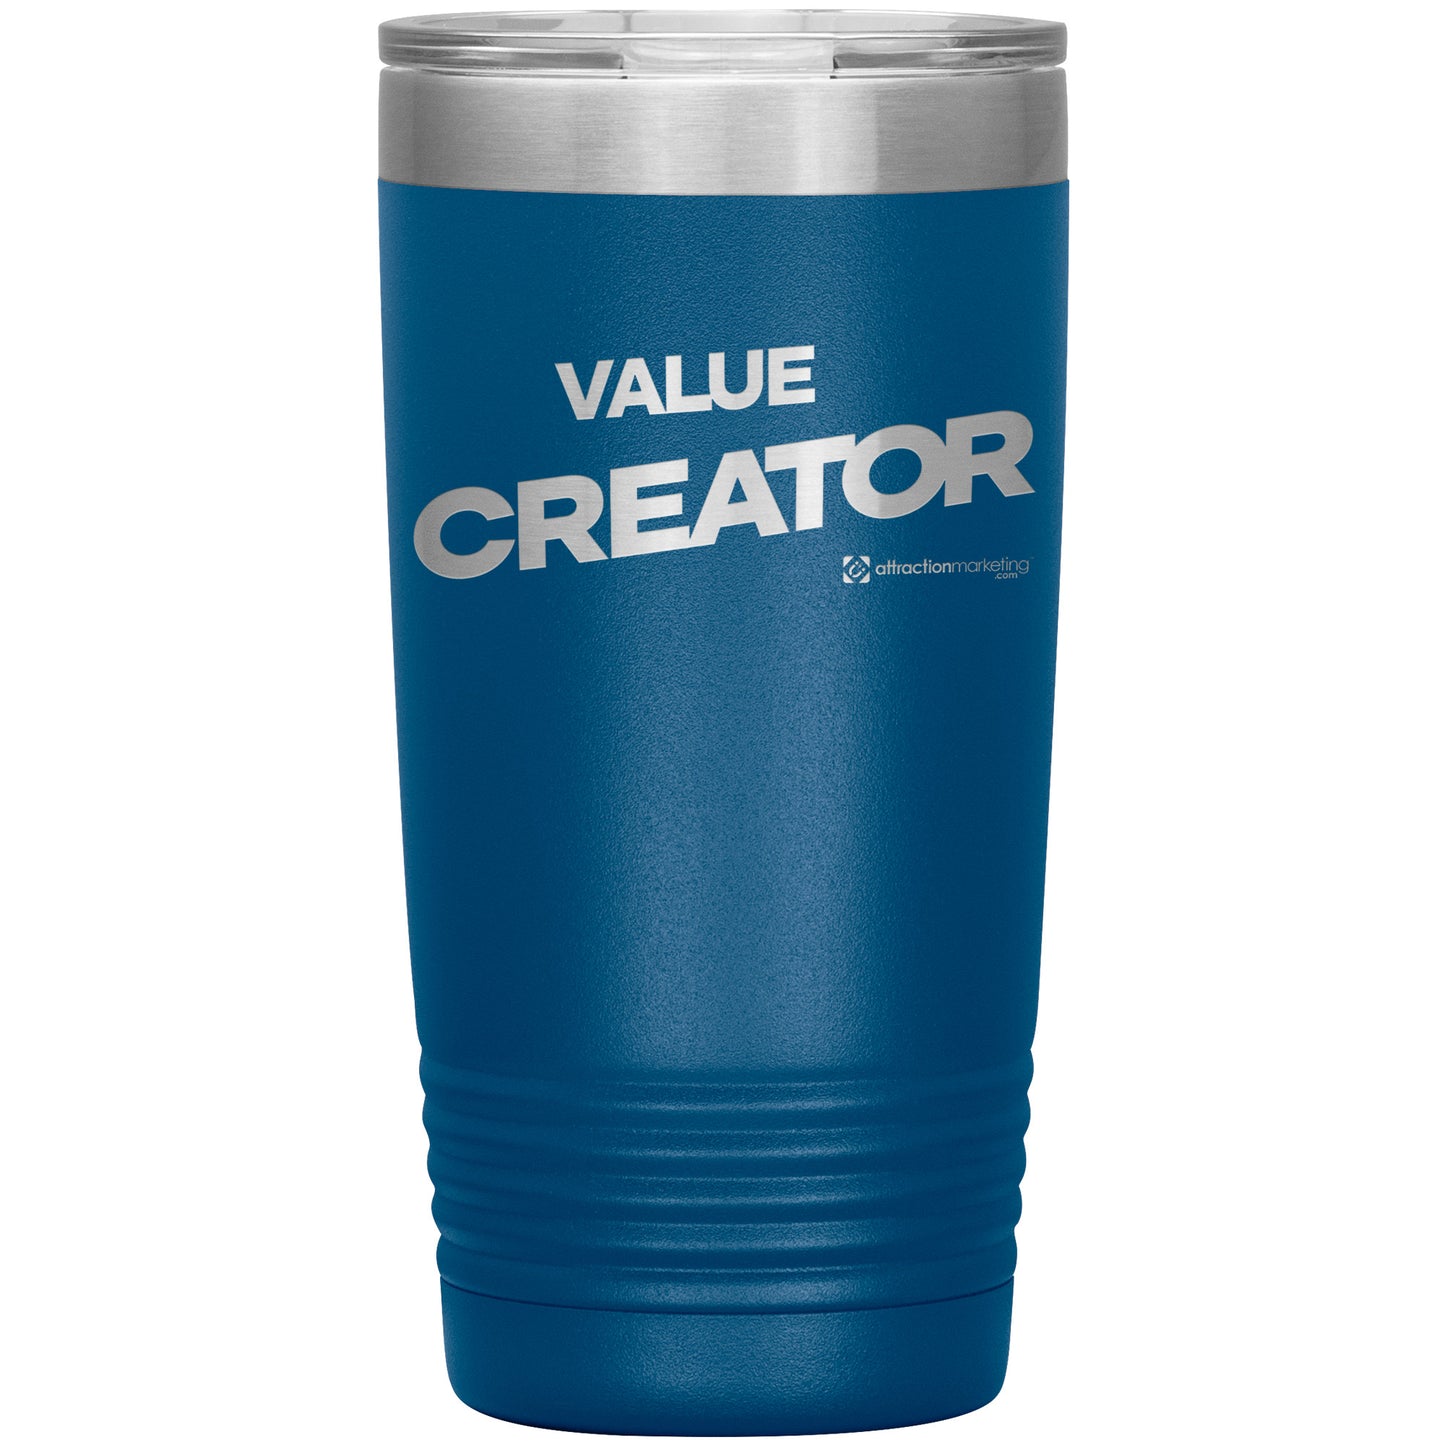 20oz Value Creator Tumbler